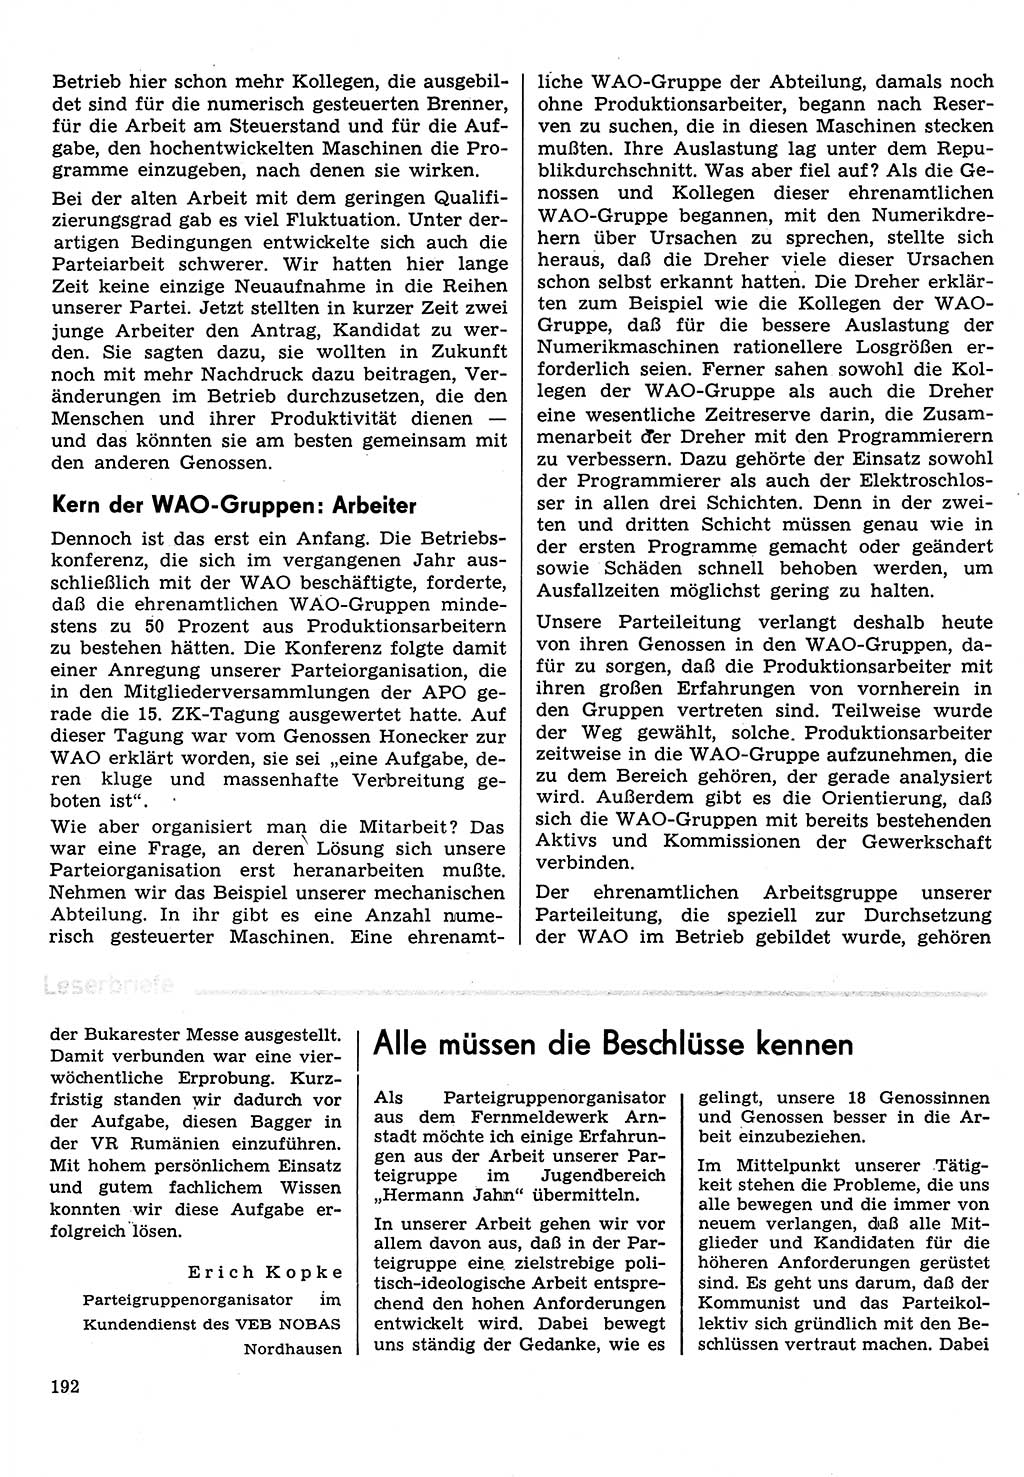 Neuer Weg (NW), Organ des Zentralkomitees (ZK) der SED (Sozialistische Einheitspartei Deutschlands) für Fragen des Parteilebens, 31. Jahrgang [Deutsche Demokratische Republik (DDR)] 1976, Seite 192 (NW ZK SED DDR 1976, S. 192)